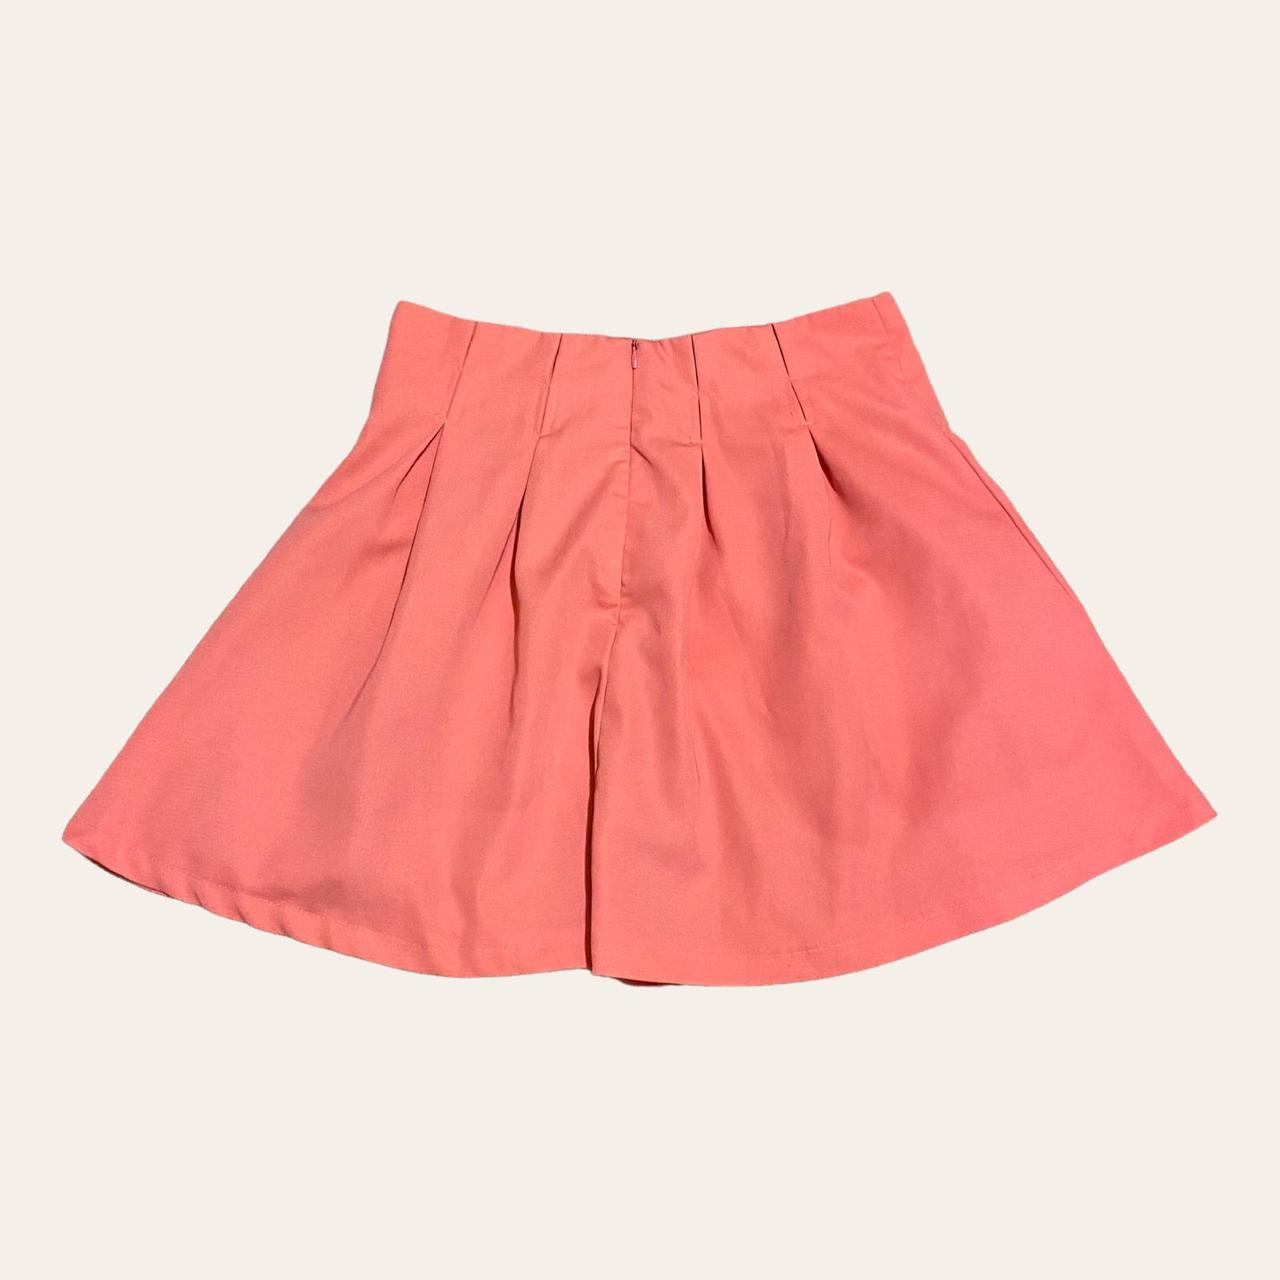 Adorable Y2K Pink Pleated Skirt. So cute! ️Brand:... - Depop